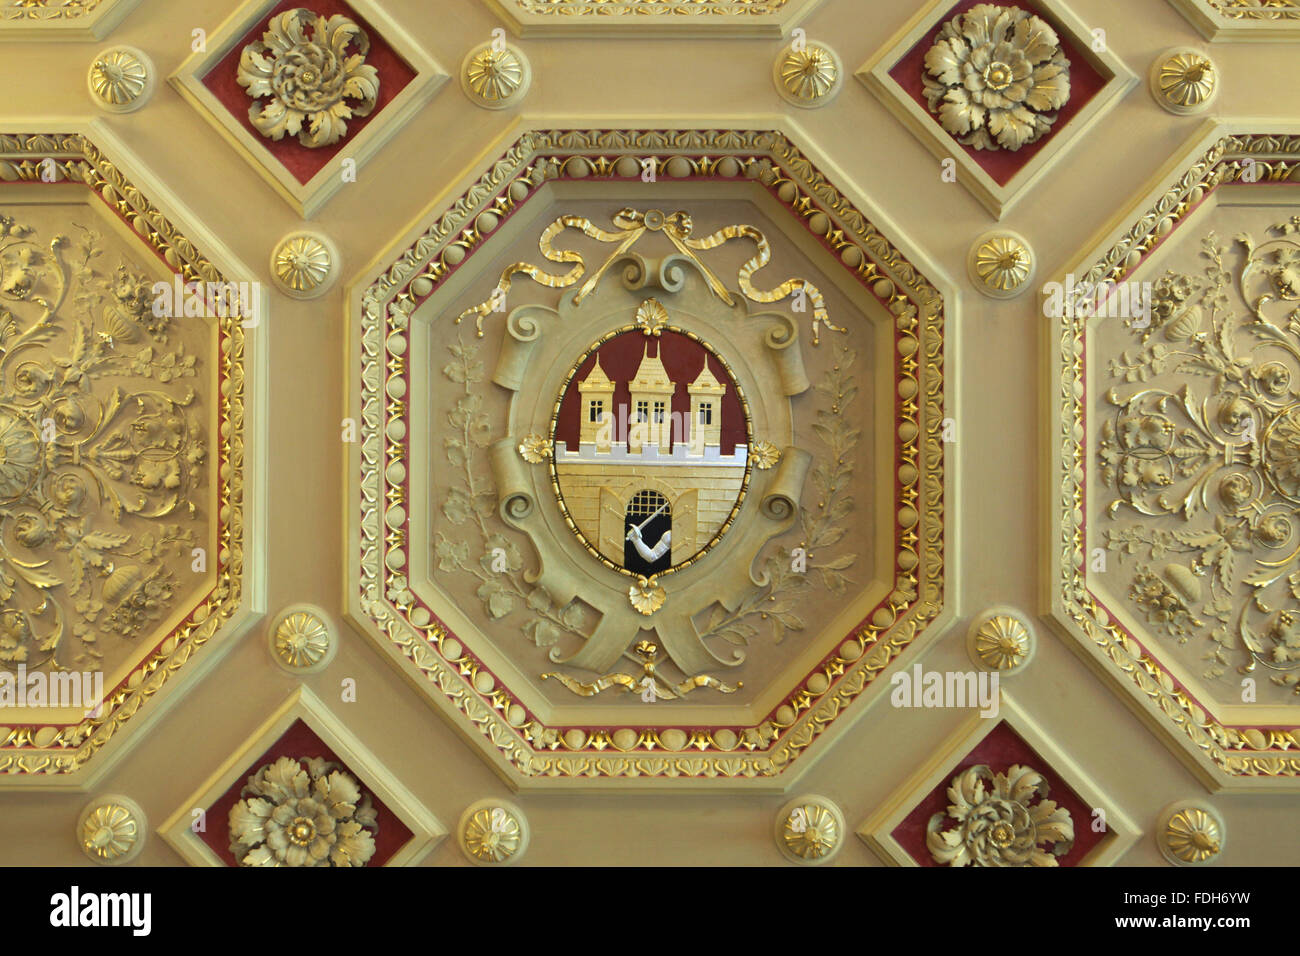 Armoiries de Prague représenté sur le plafond en stuc dans le palais Zofin sur Slovansky Island à Prague, République tchèque. Banque D'Images